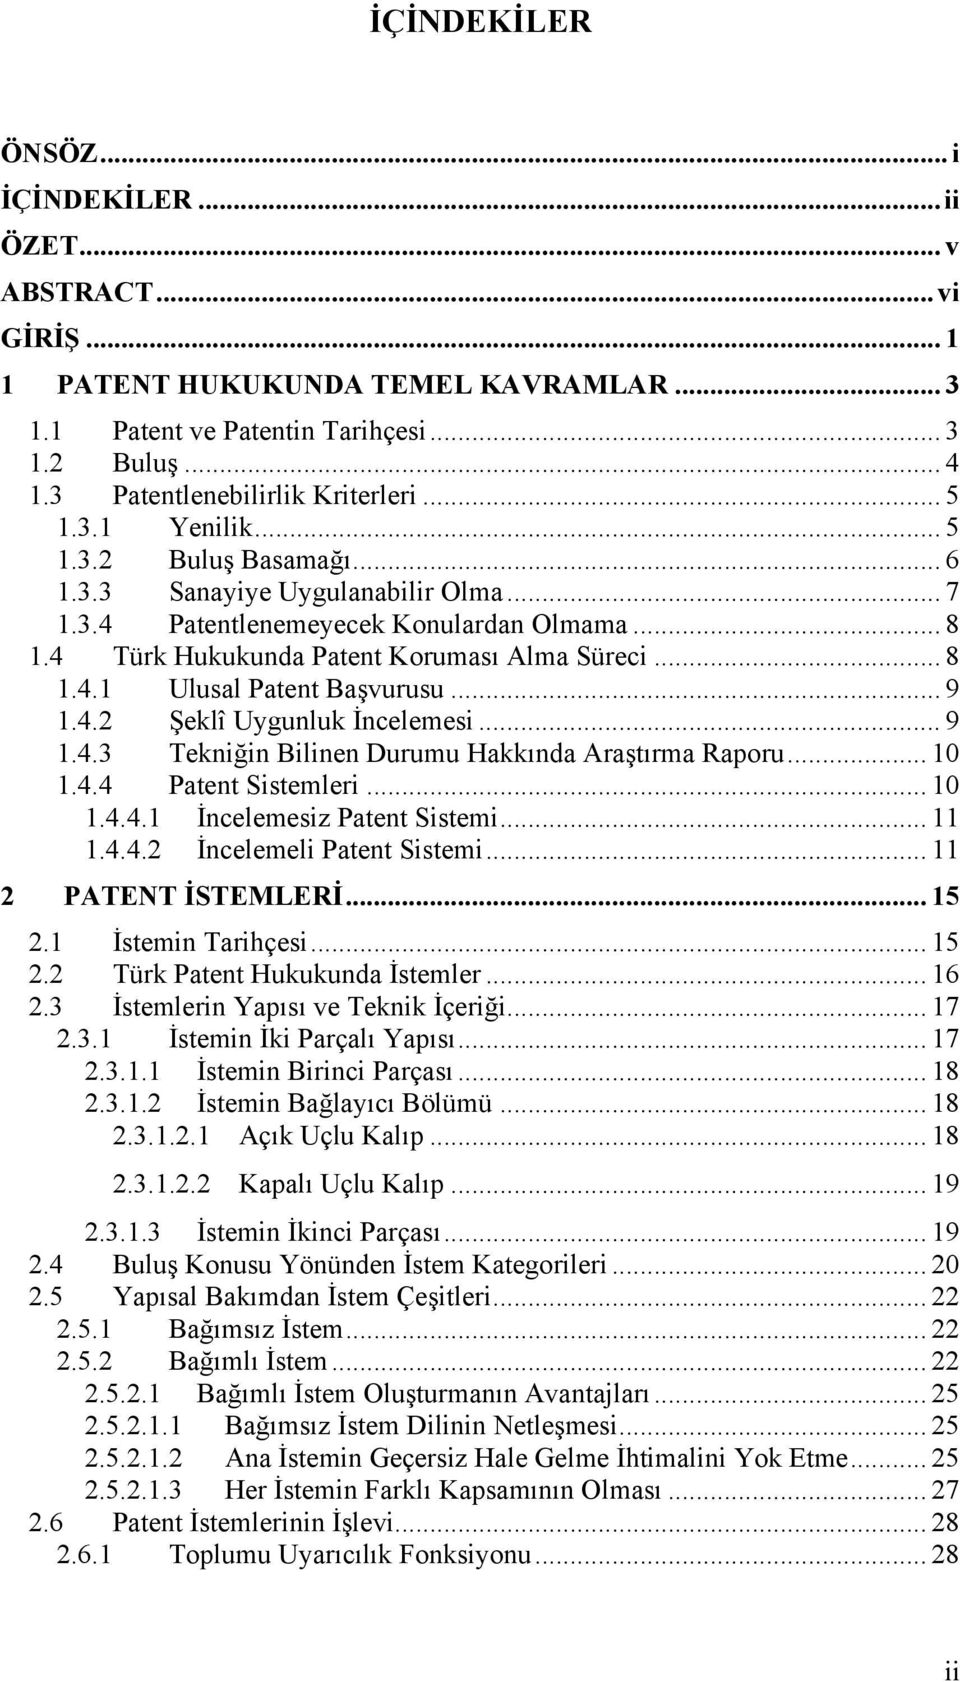 4 Türk Hukukunda Patent Koruması Alma Süreci... 8 1.4.1 Ulusal Patent Başvurusu... 9 1.4.2 Şeklî Uygunluk İncelemesi... 9 1.4.3 Tekniğin Bilinen Durumu Hakkında Araştırma Raporu... 10 1.4.4 Patent Sistemleri.